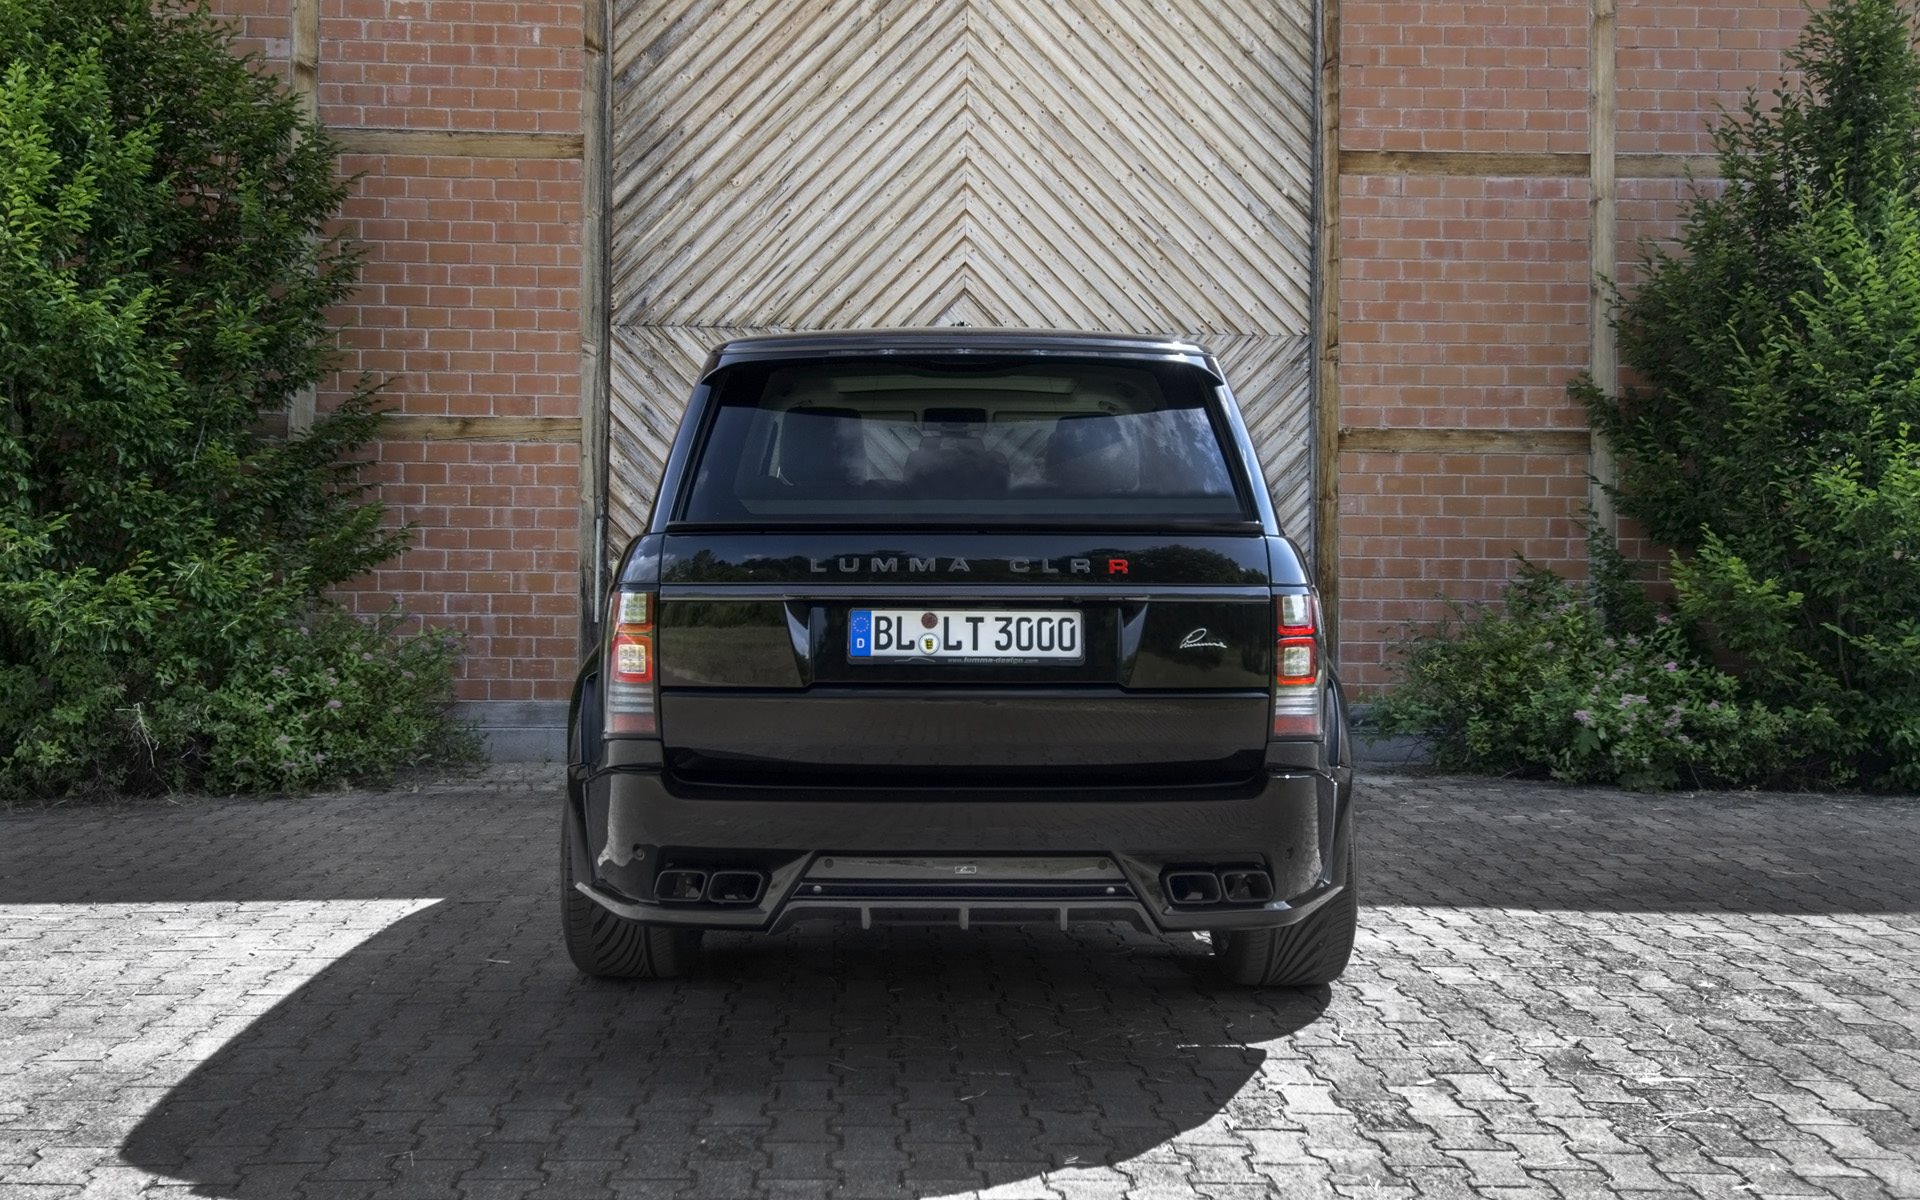 Черный Range Rover CLR-R, Lumma Design, тюнинг, задние фонари, оптика, багажник, обвесы, ворота